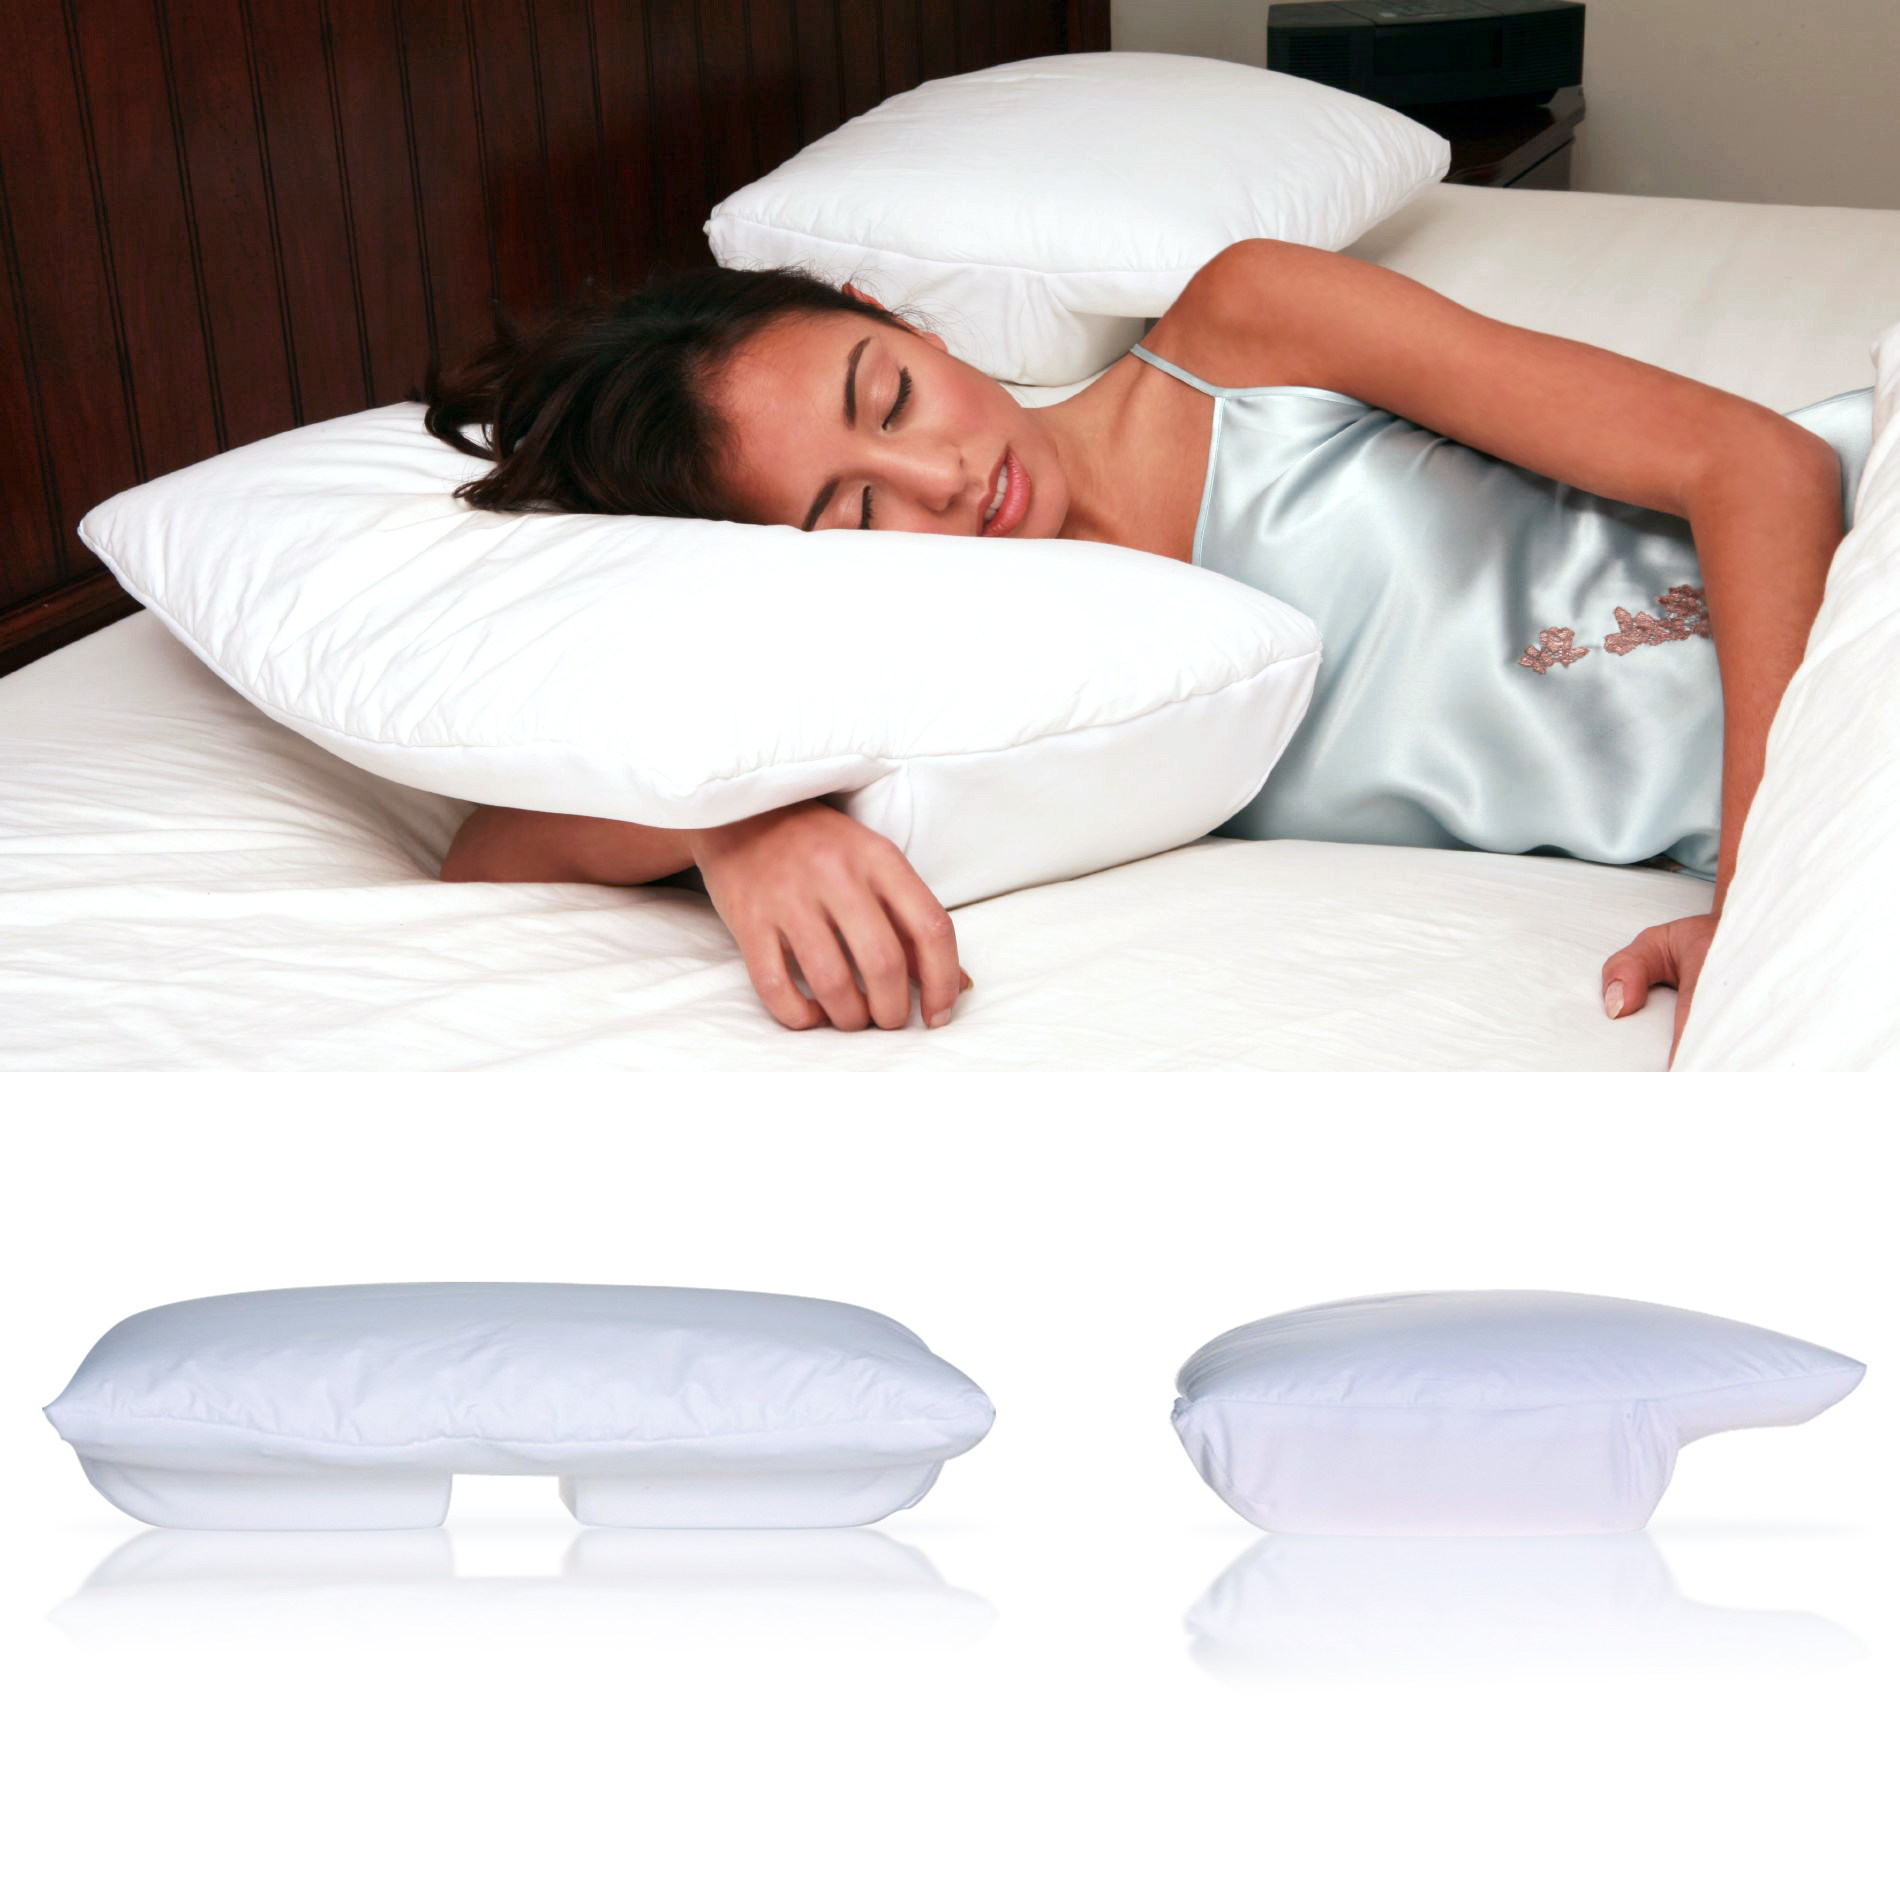 The Original Better Sleep Memory Foam Pillow 3.5 Inch Thick Foam, Cream.